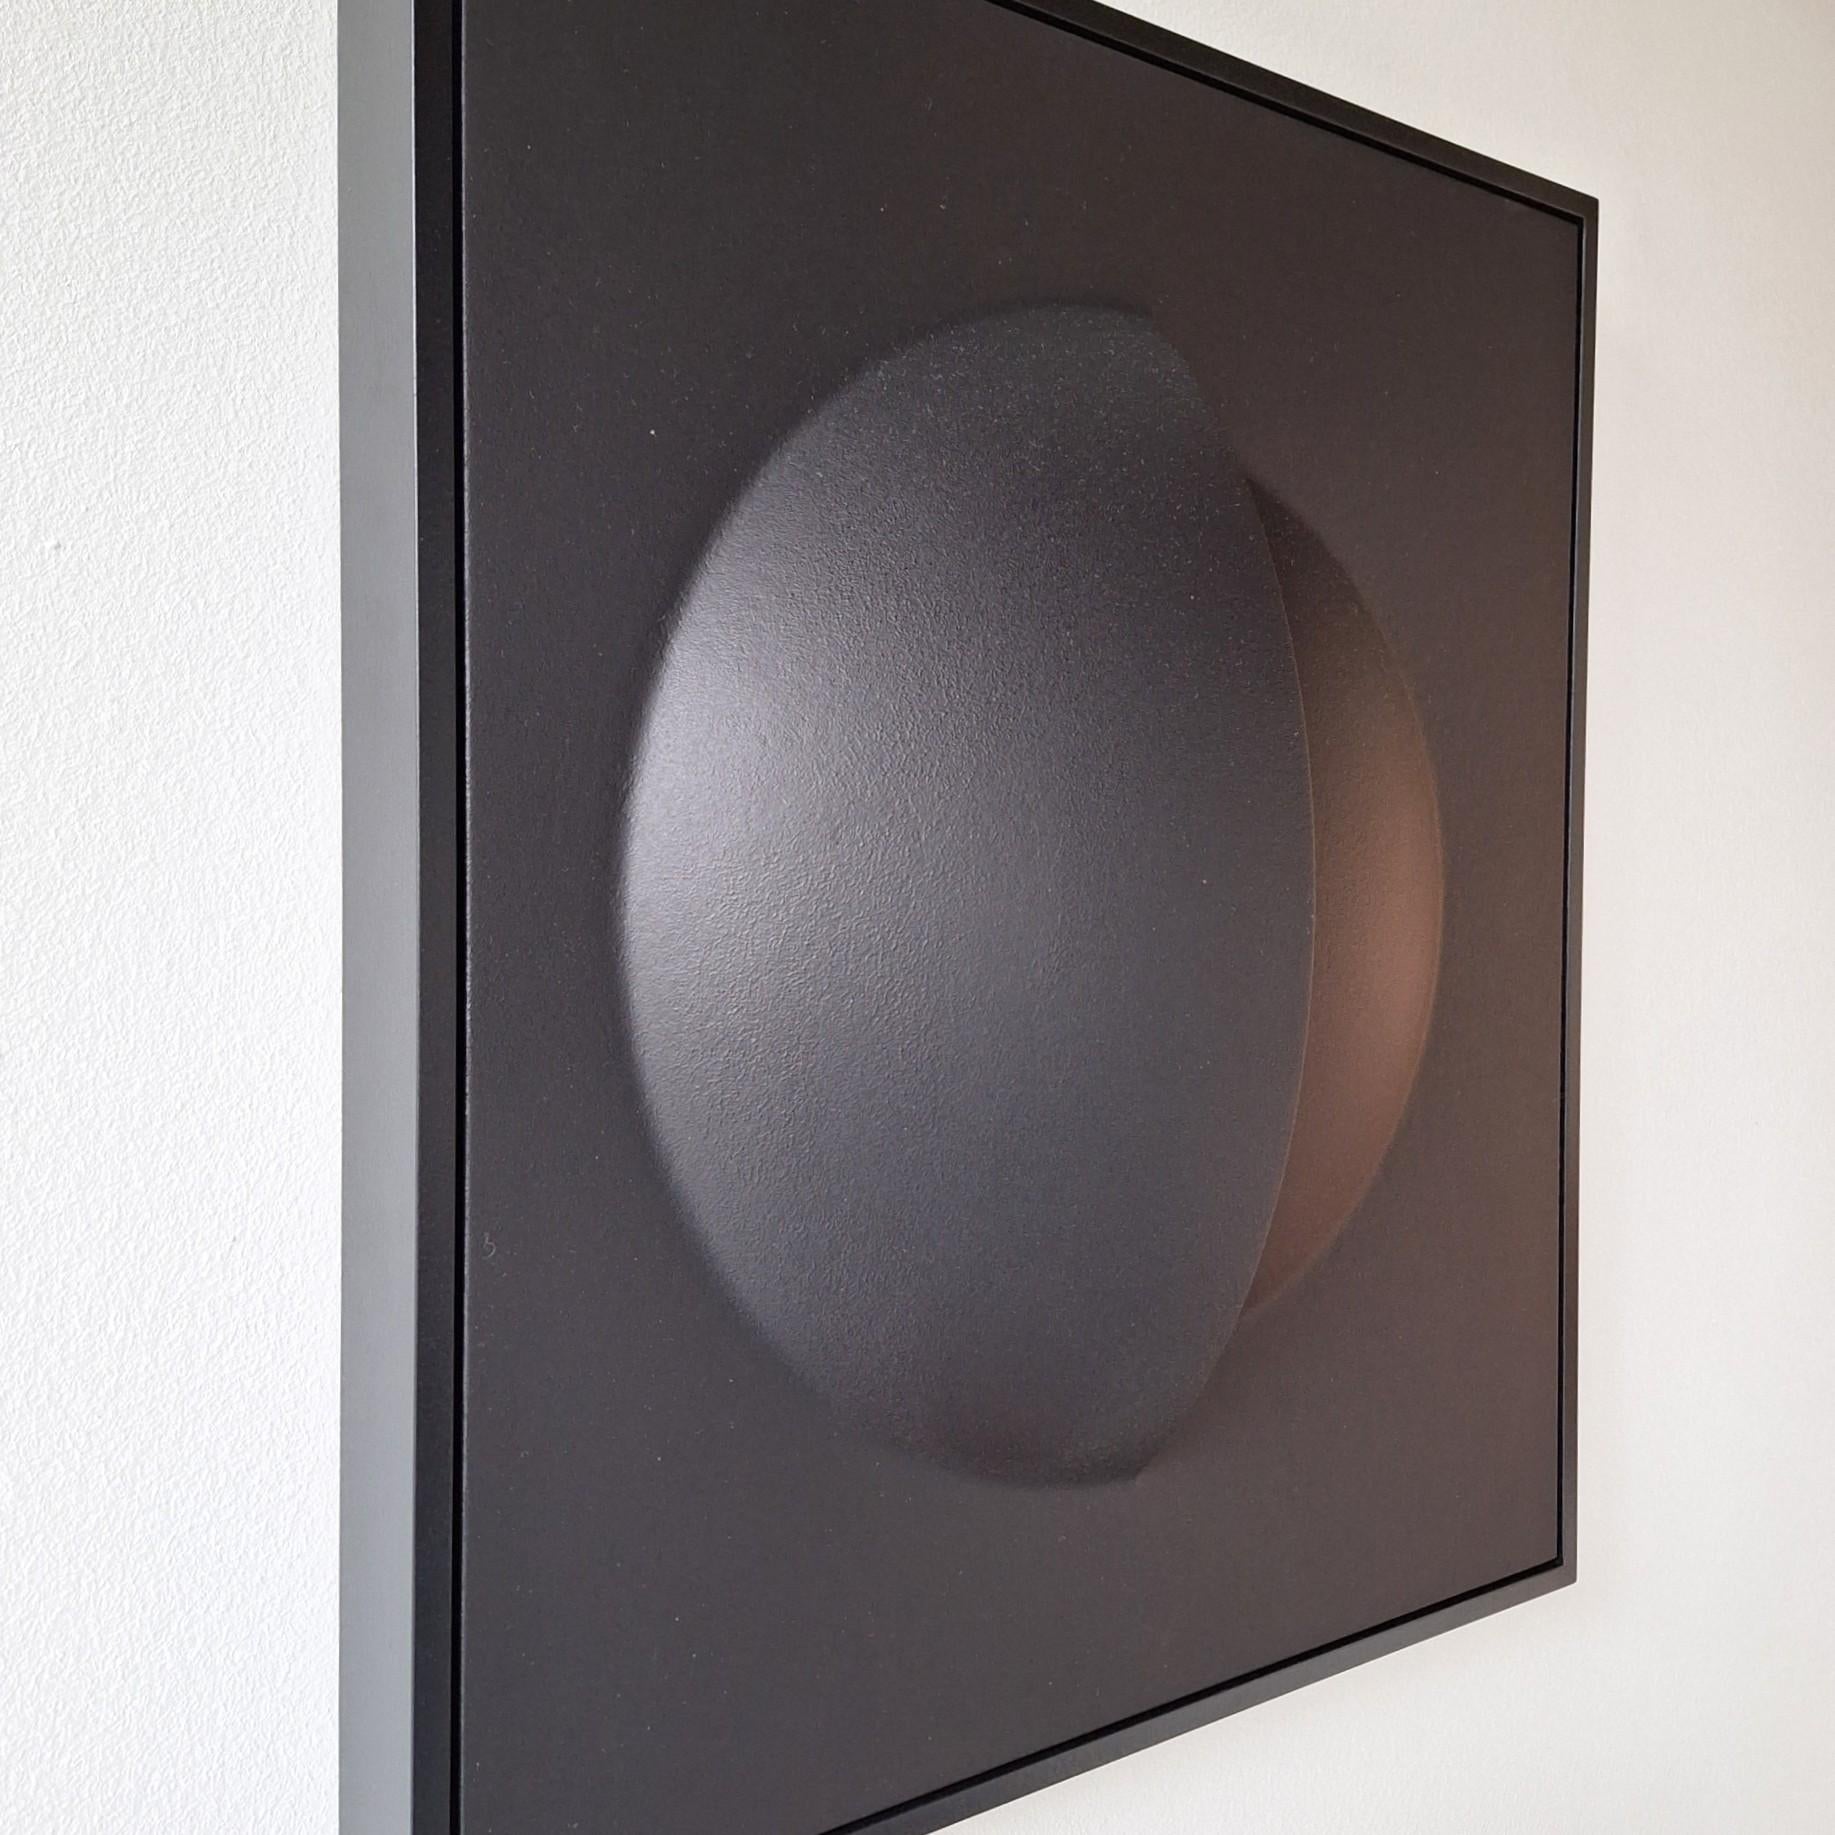 Nocturnal Parts ist ein einzigartiges, modernes Gemälderelief des niederländischen Künstlers Sander Martijn Jonker. Es handelt sich um ein Relief, das aus zwei offenen, kugelförmigen Teilen besteht und eine faszinierende, mattschwarze Oberfläche